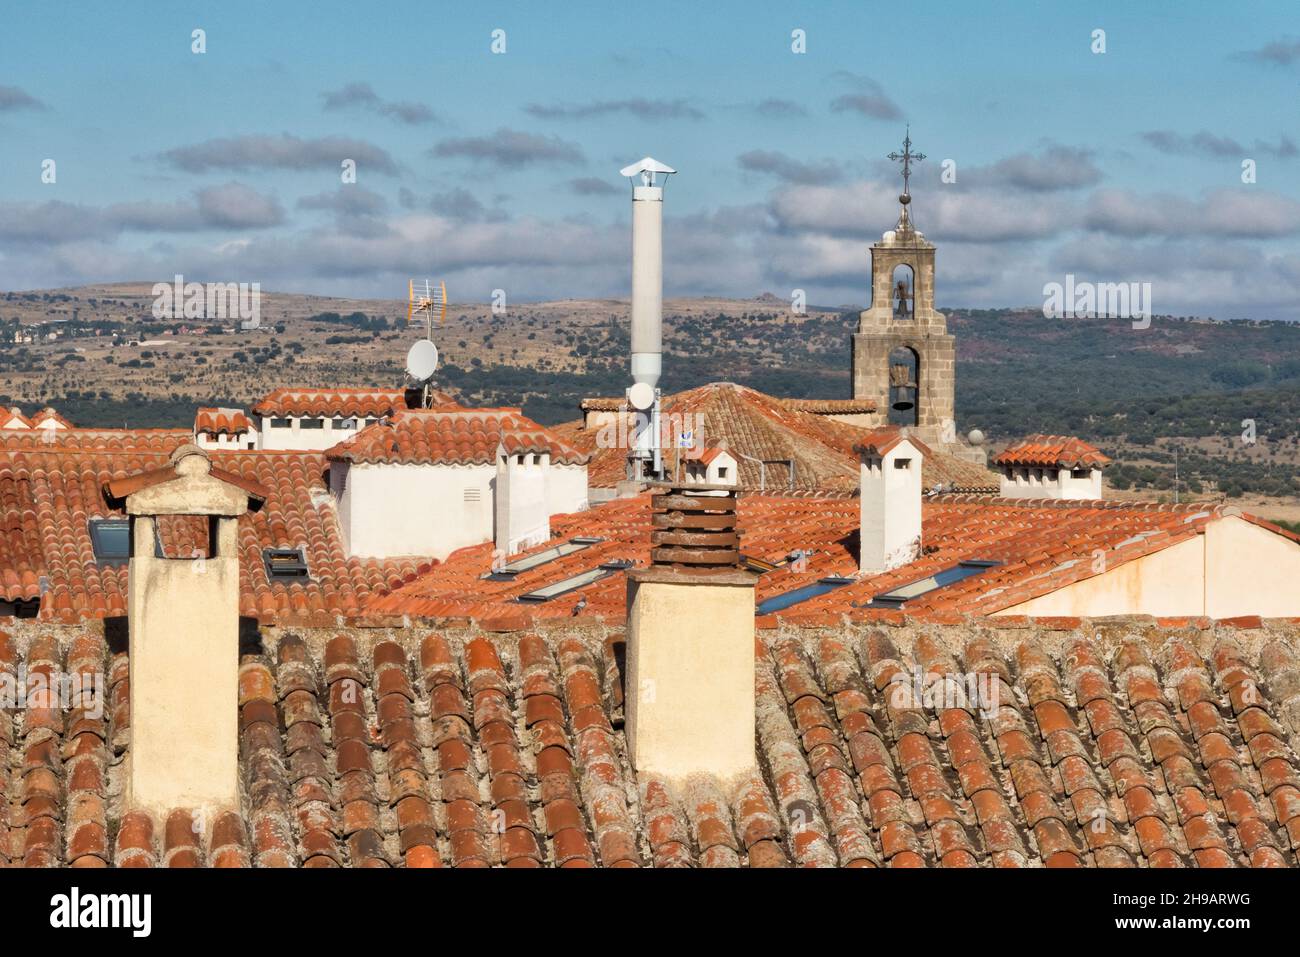 Rotes Ziegeldach der Kathedrale von Avila, Avila (UNESCO-Weltkulturerbe), Provinz Avila, Autonome Gemeinschaft Kastilien und Leon, Spanien Stockfoto